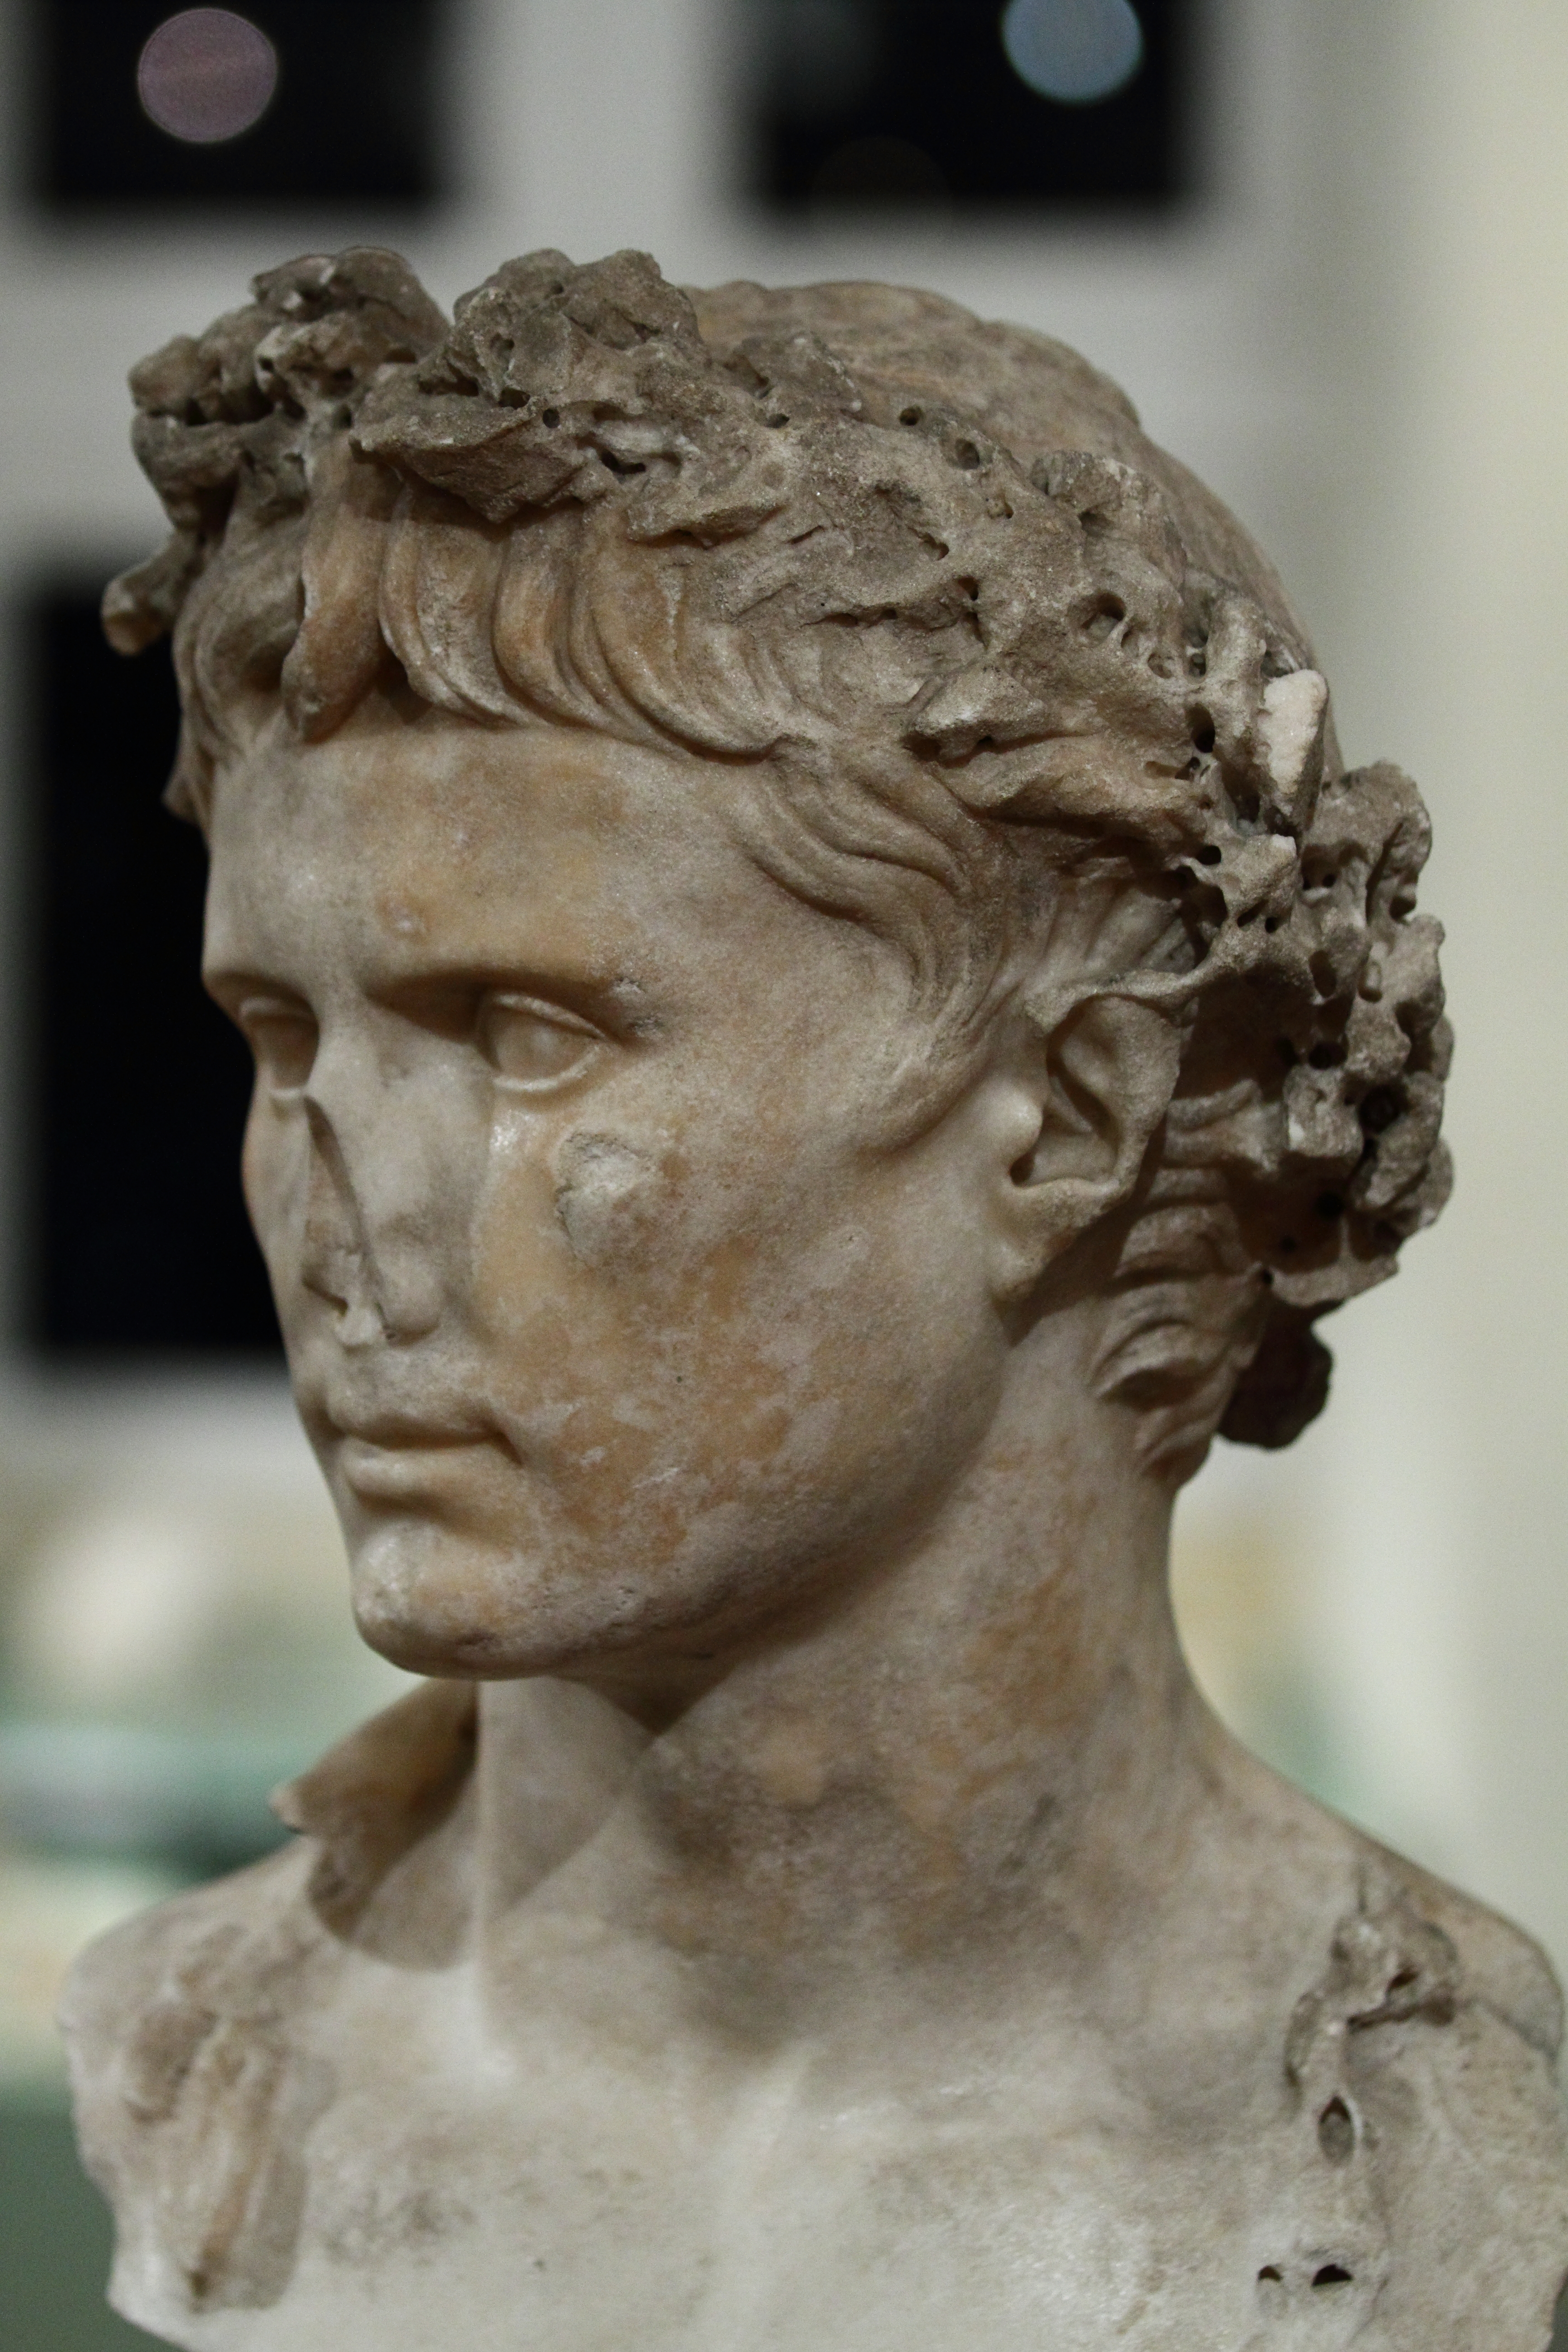 The Imperator Caesar Divi Filius Augustus